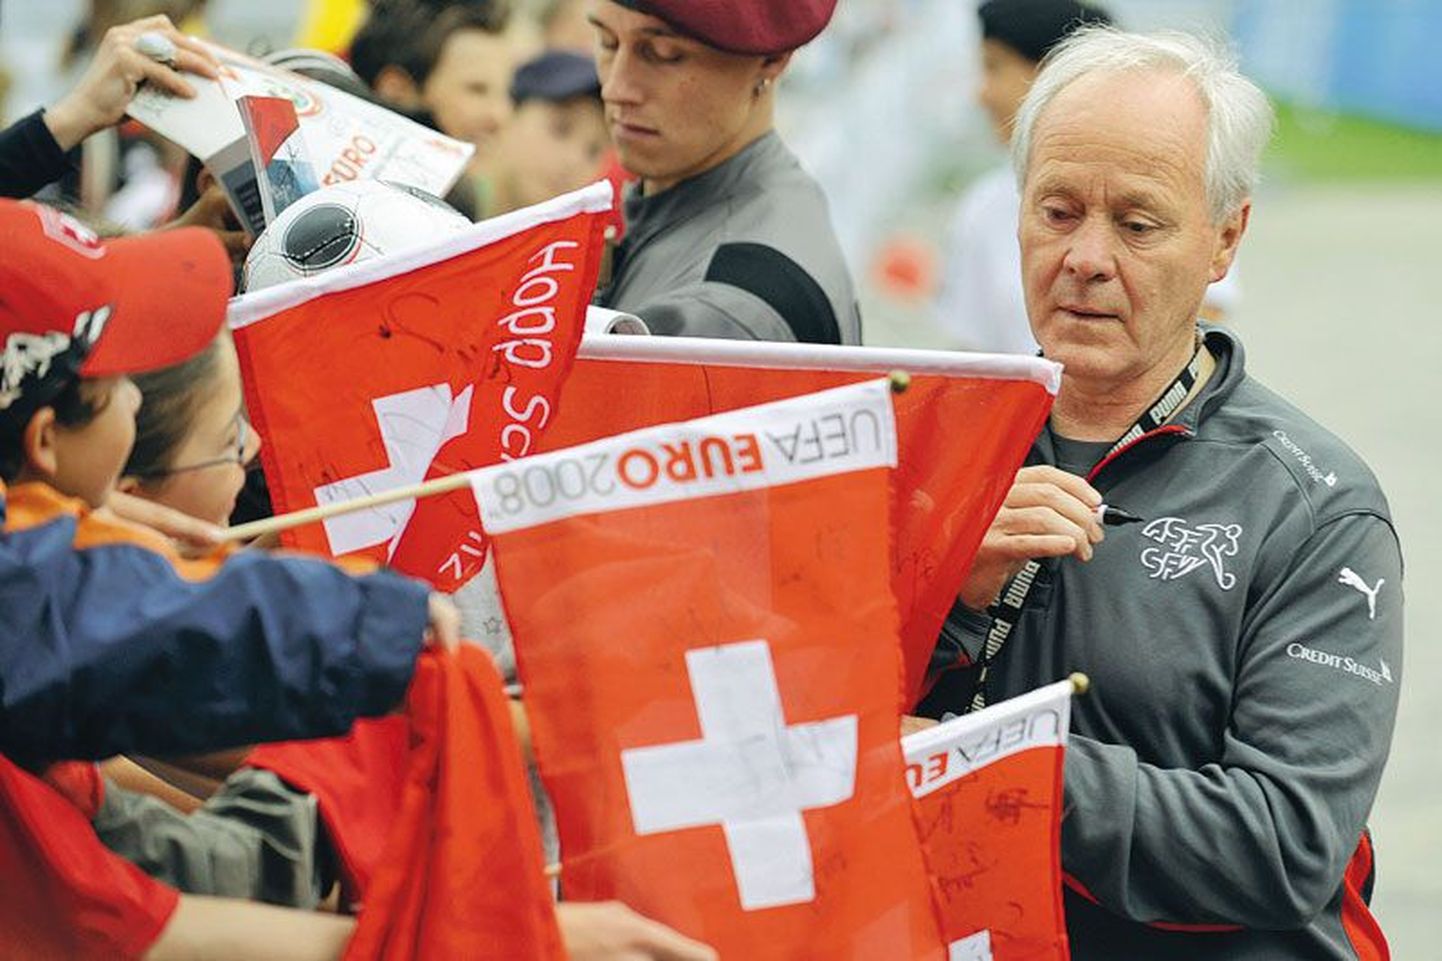 Vähemalt Euroopa meistrivõistluste finaalturniiri ajal jätab Šveits endast mulje kui jalgpallimaast. Pildil jagab autogramme maa koondise peatreener             Köbi Kuhn.